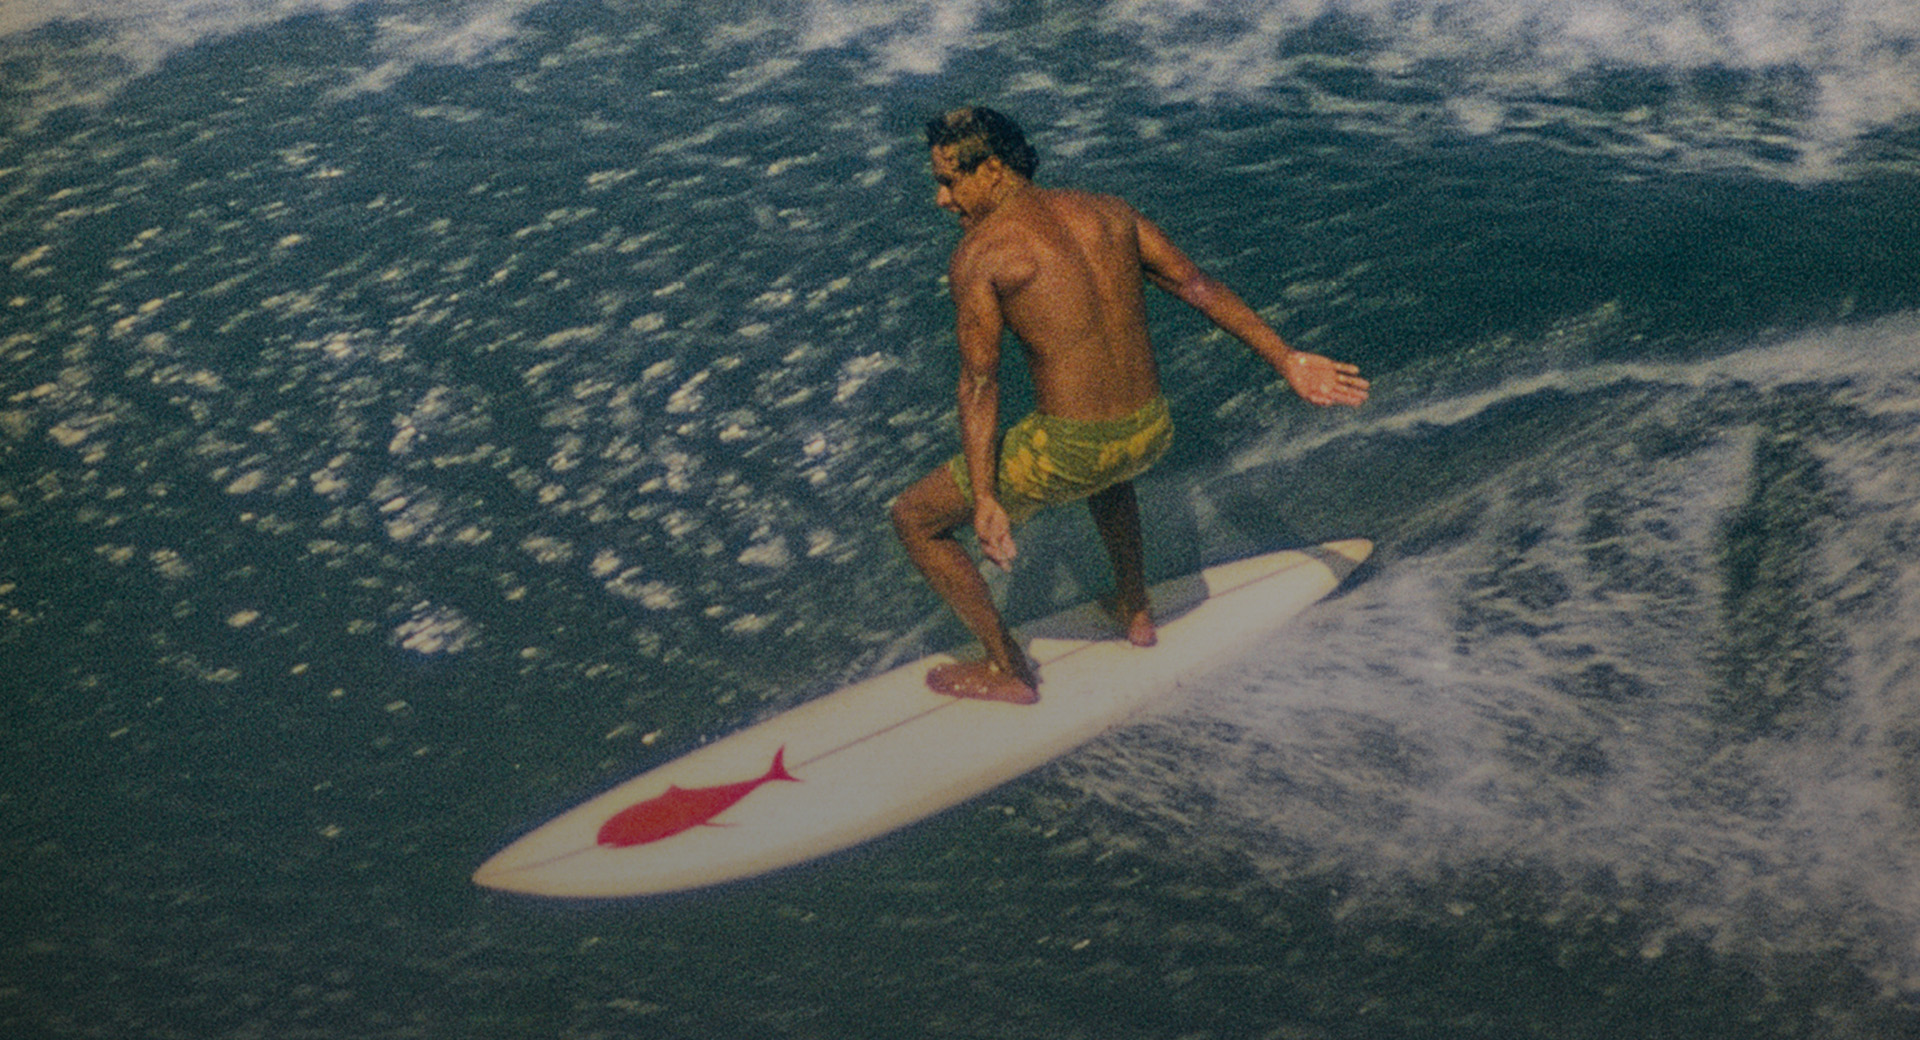 A surfer riding a wave.